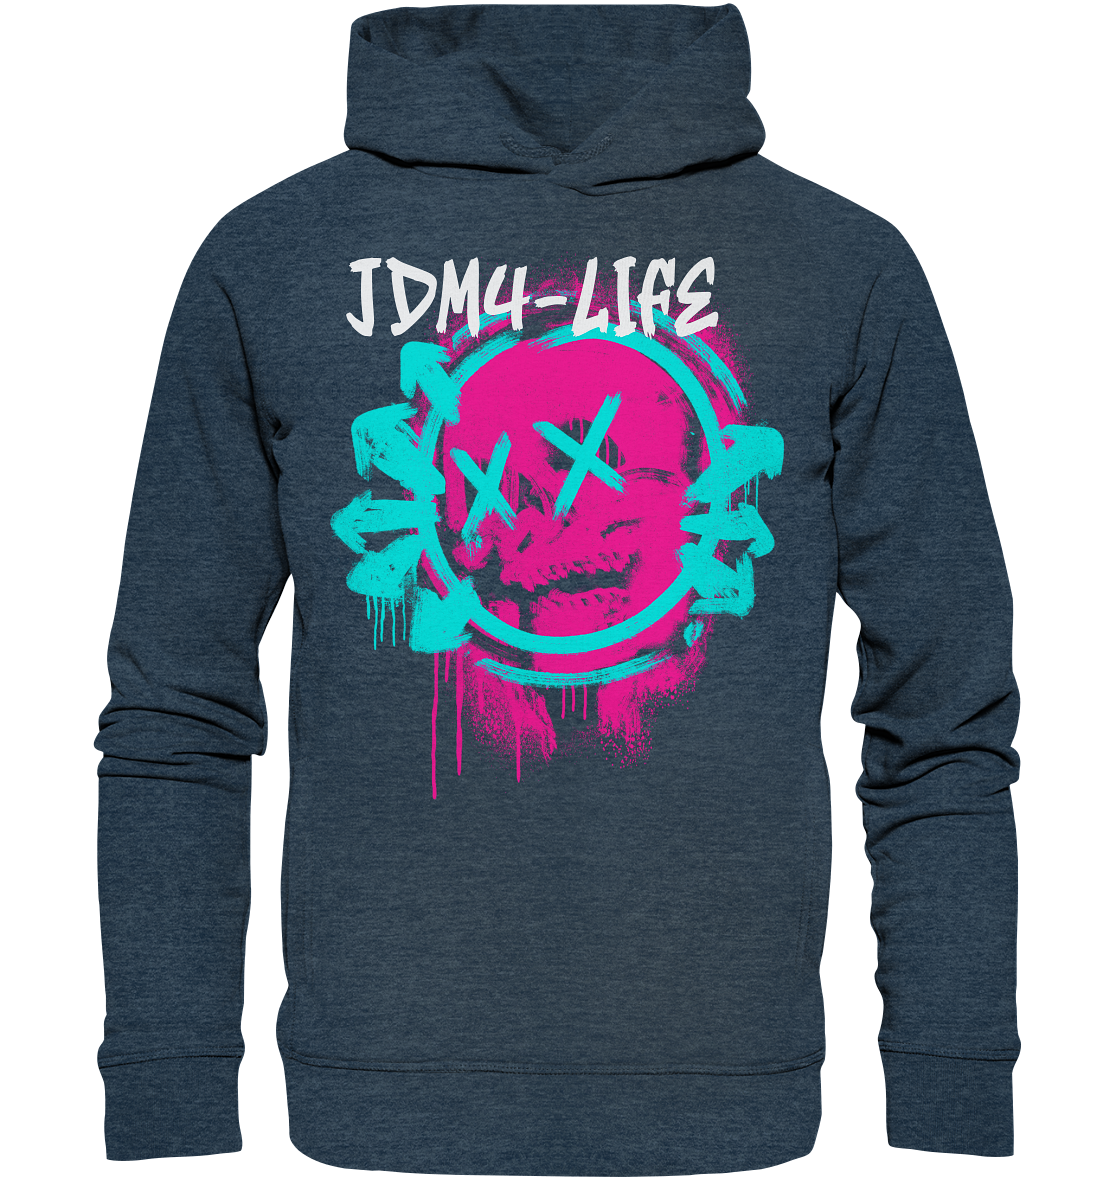 JDM4-LIFE Graffiti - Organic Fashion Hoodie